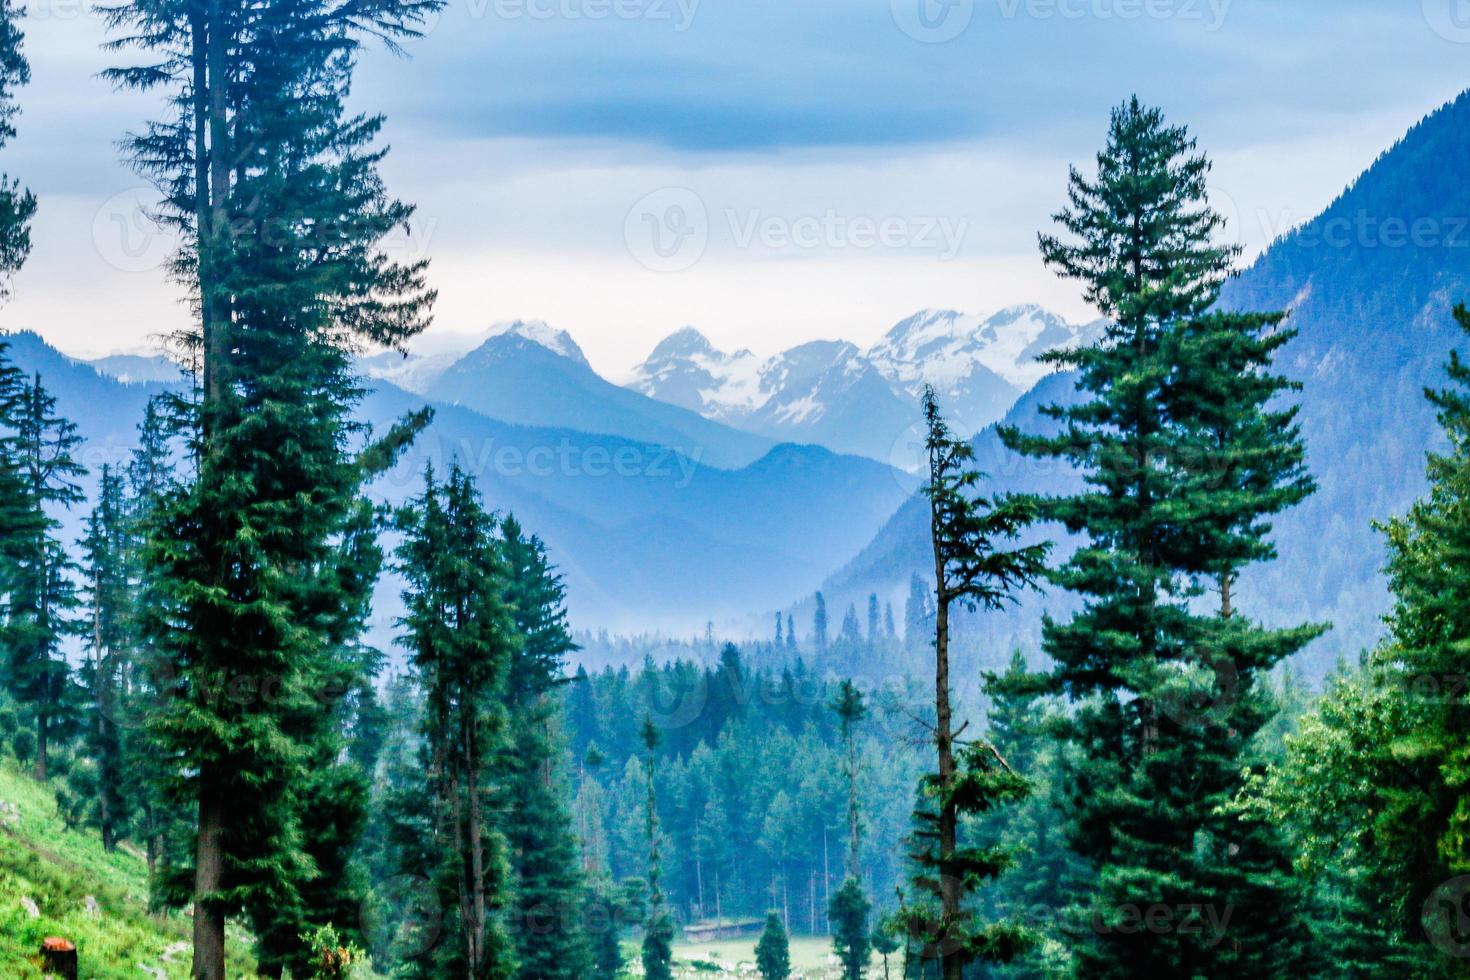 Kumrat vallei prachtig landschap bergen uitzicht foto